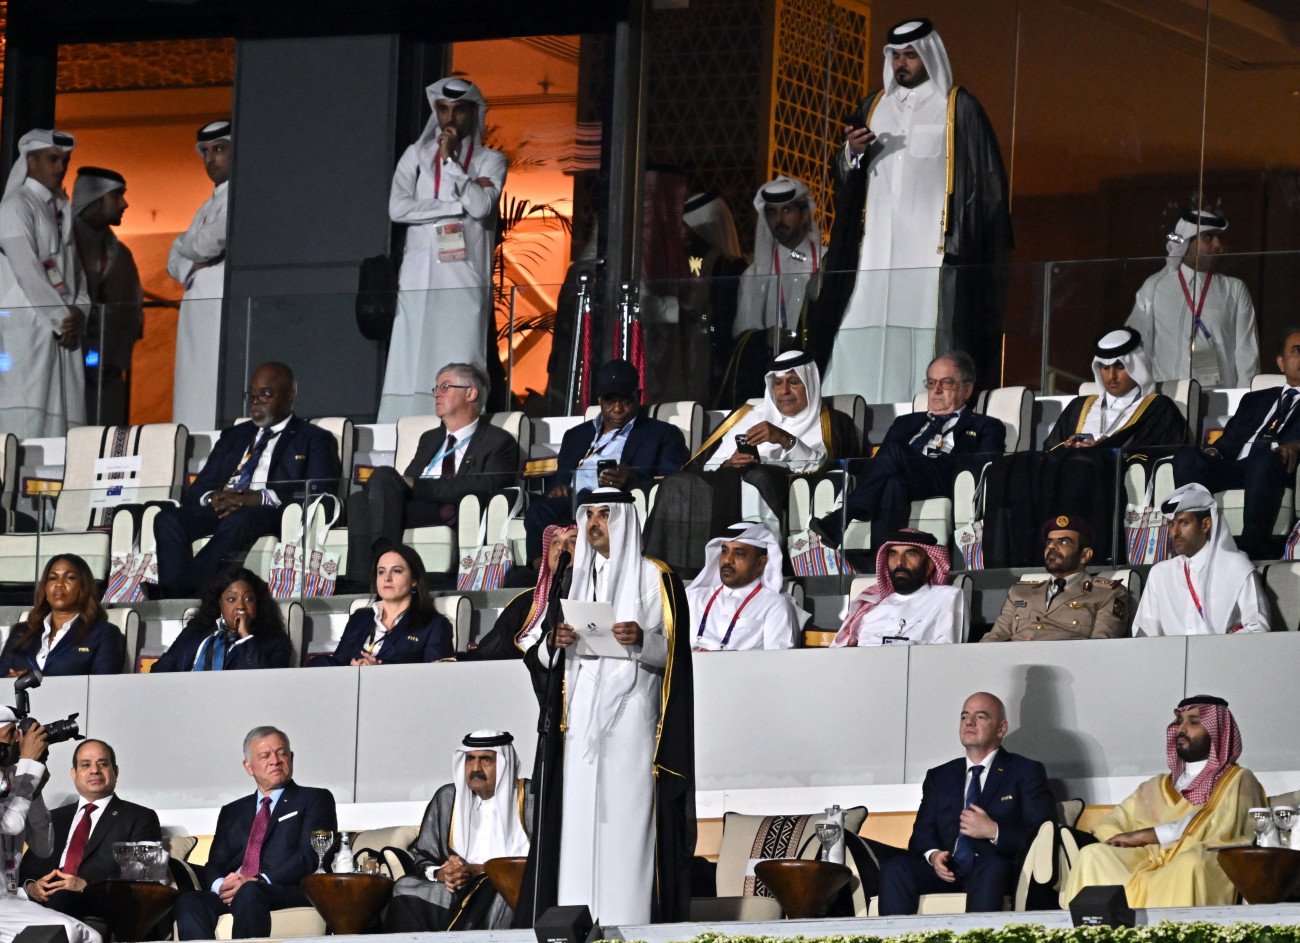 al-Hor, 2022. november 20.
Tamím bin Hamad ál-Száni sejk, katari emír beszél a katari labdarúgó-világbajnokság megnyitóünnepségén az al-hori al-Bajt Stadionban 2022. november 20-án. Mellette Abdel-Fattáh esz-Szíszi egyiptomi elnök, II. Abdalláh jordániai király, Hamad bin Kalifa ál-Száni sejk, korábbi katari emír, Gianni Infantino, a Nemzetközi Labdarúgó-szövetség, a FIFA elnöke és Mohamed bin Szalmán herceg, szaúd-arábiai trónörökös (b-j).
MTI/EPA/Nusad Szekkajil